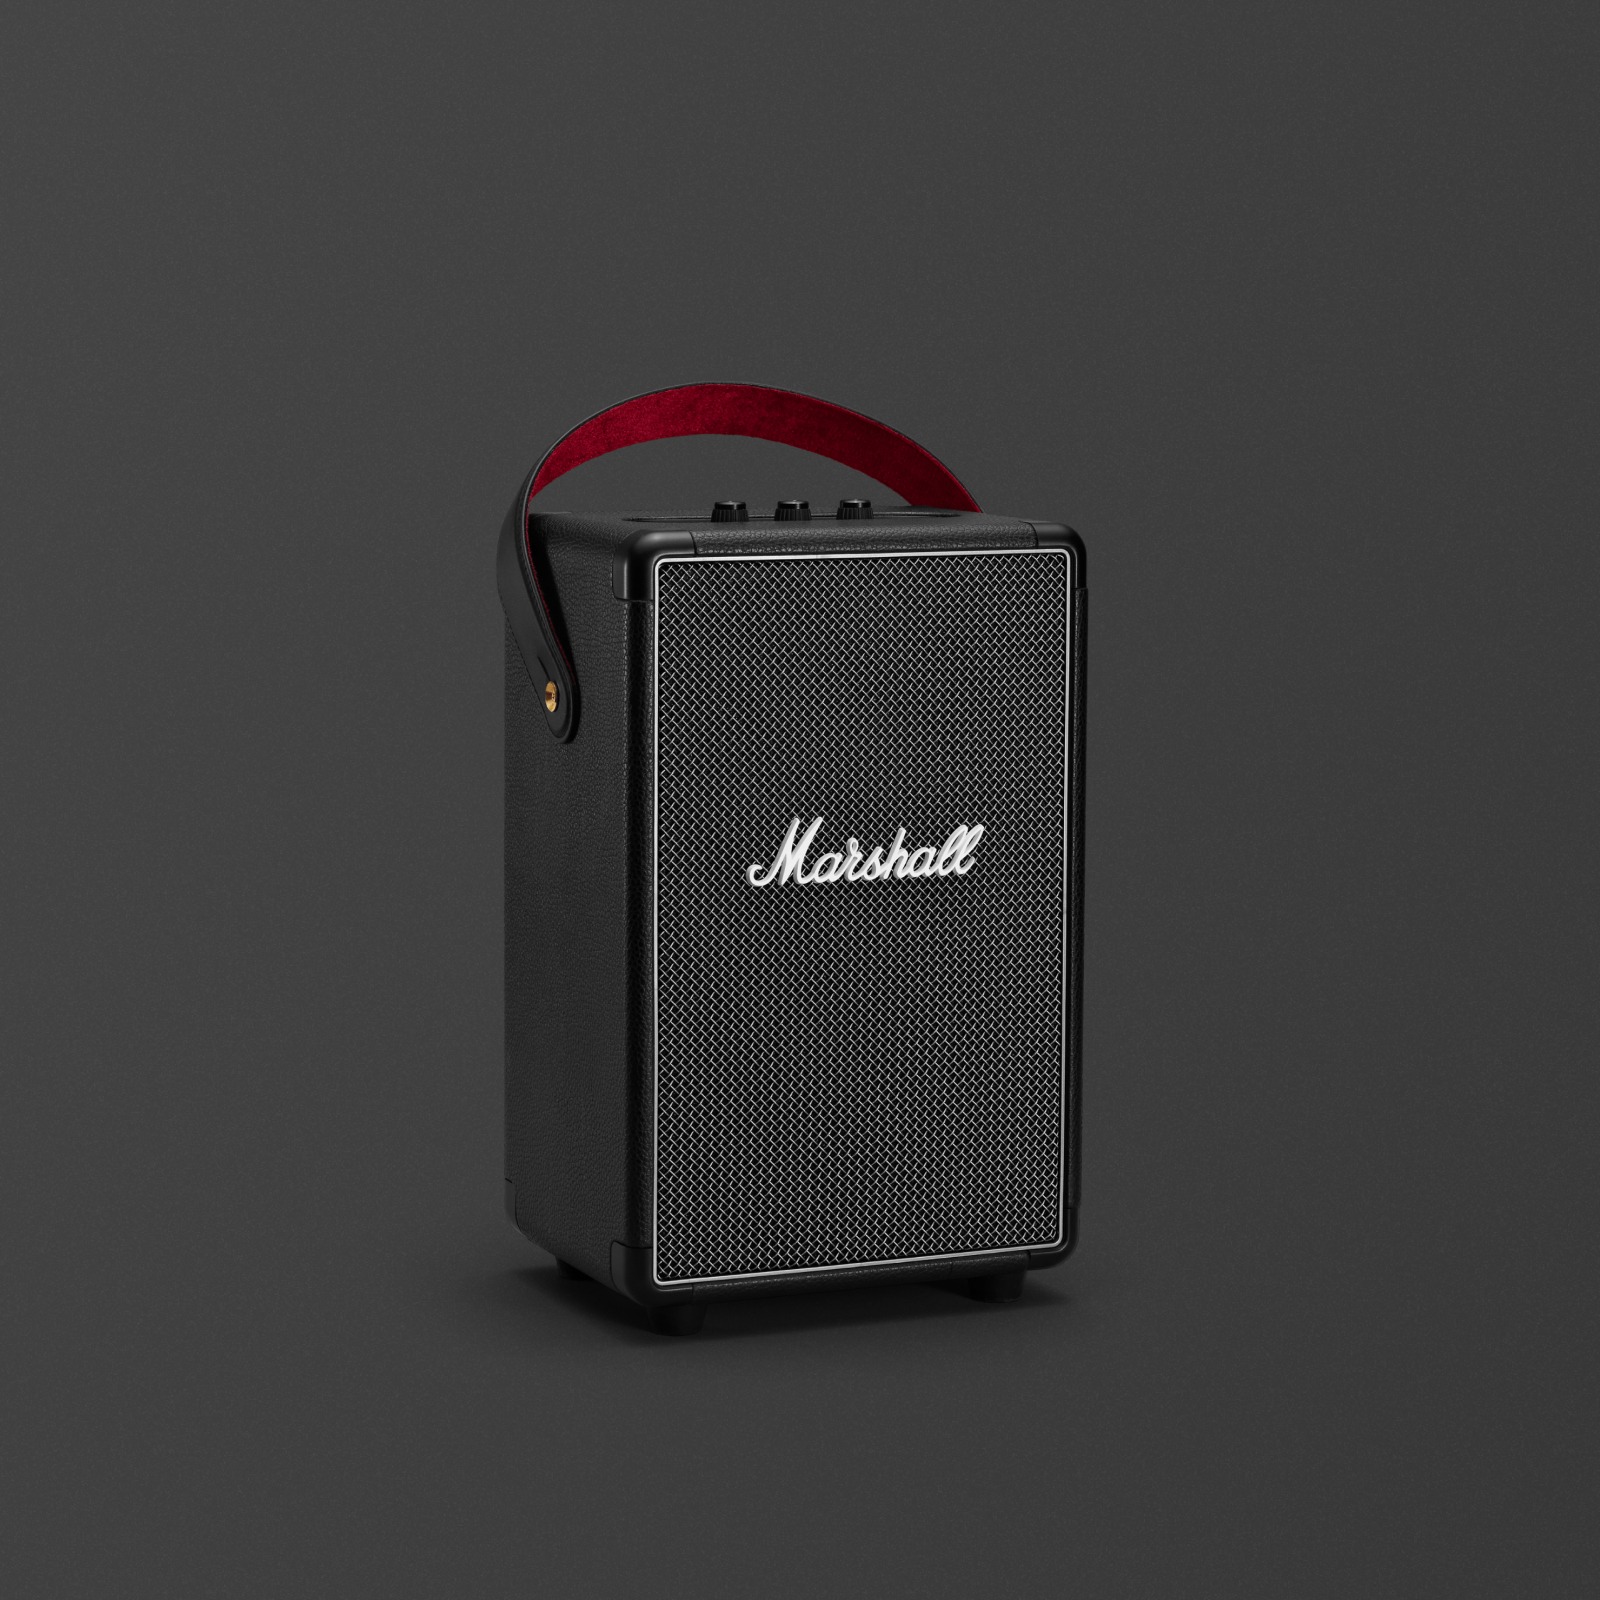 Le Marshall TUFTON BLACK est un haut-parleur noir élégant et compact qui délivre un son puissant et net.